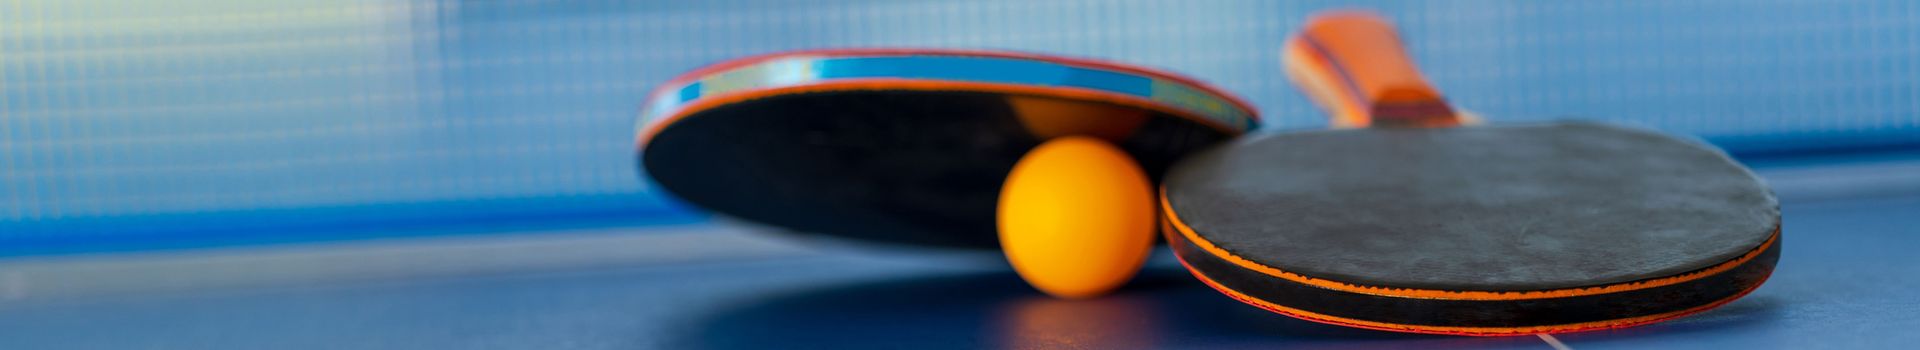 Zwei Tischtennisschläger und ein Ball liegen vor dem Netz auf einer Tischtennisplatte.